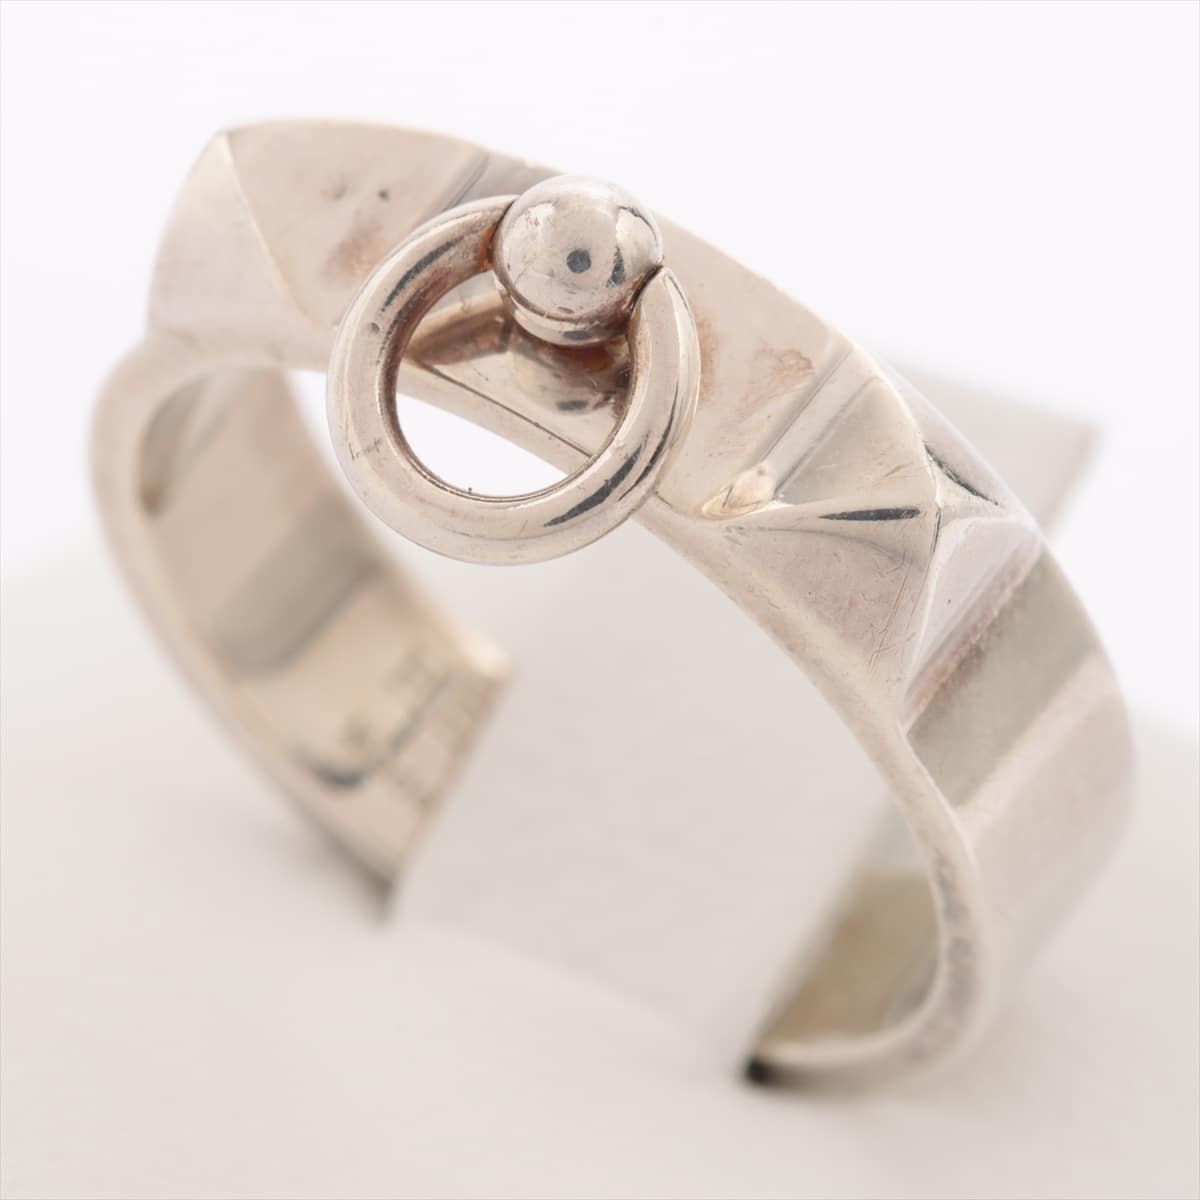 Hermès Collier de Chien rings 925 4.9g Silver